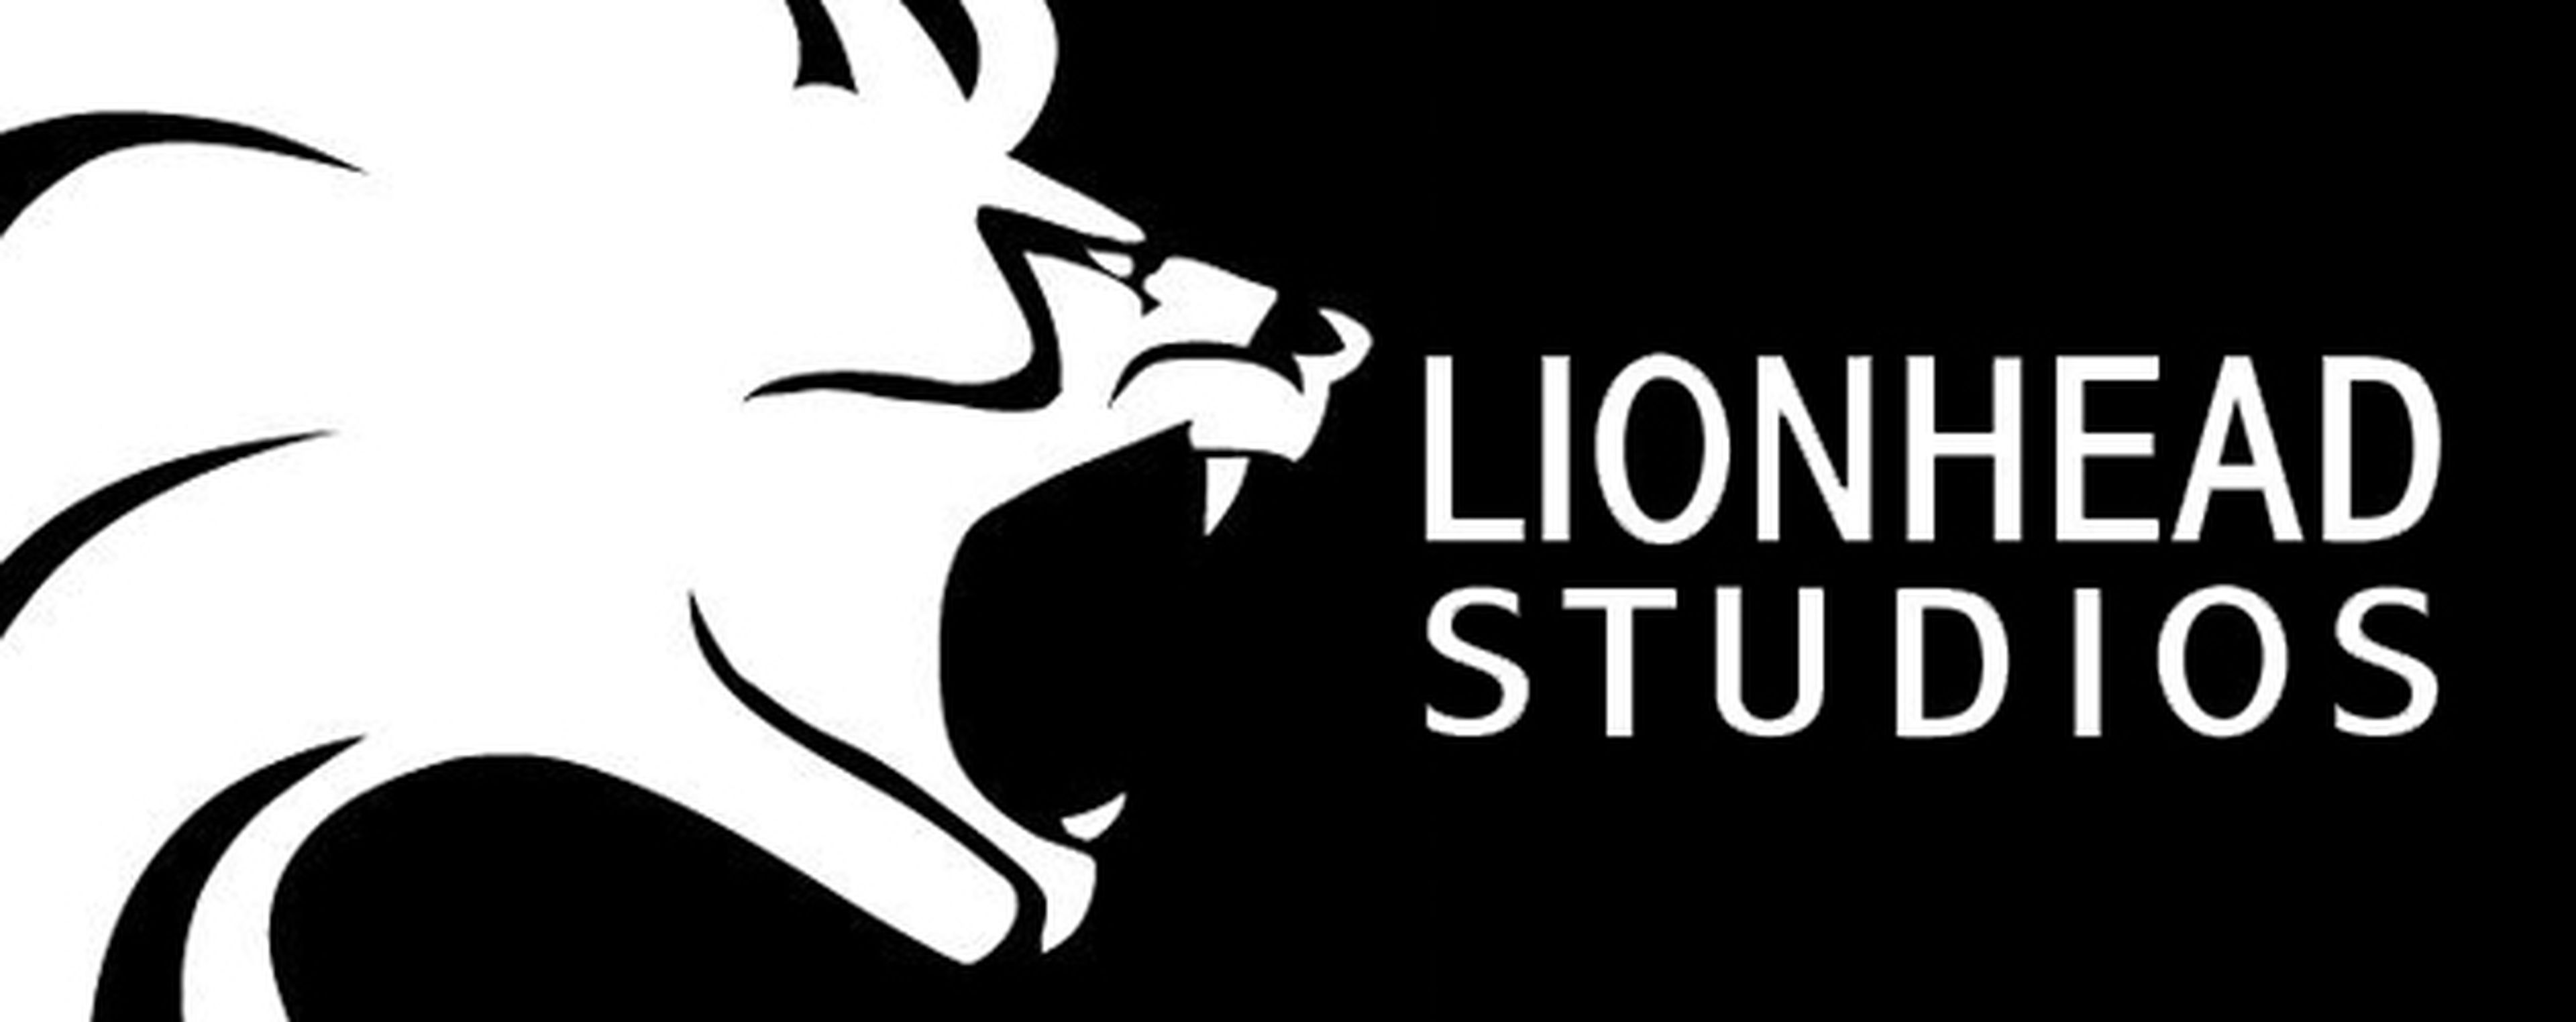 Sony fichará a los miembros de Lionhead Studios tras su salida de Microsoft